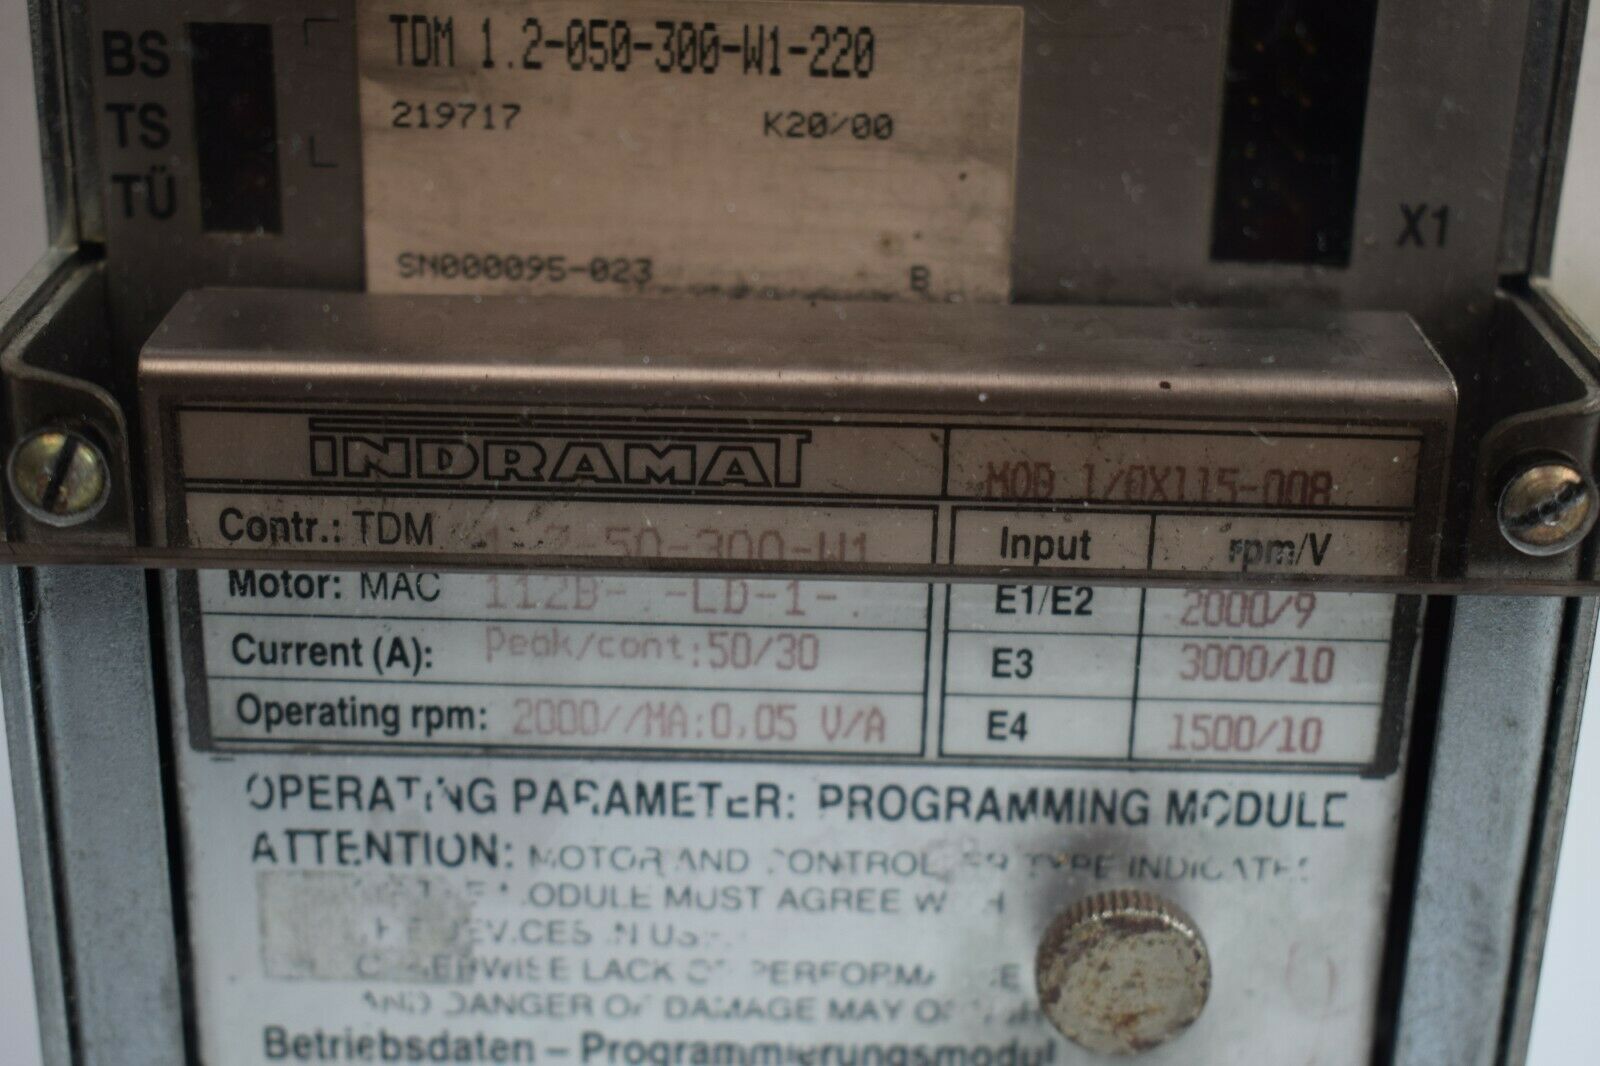 Indramat A.C. Servo Controller TDM 1.2-050-300-W1-220 + MOD1/0X115-008